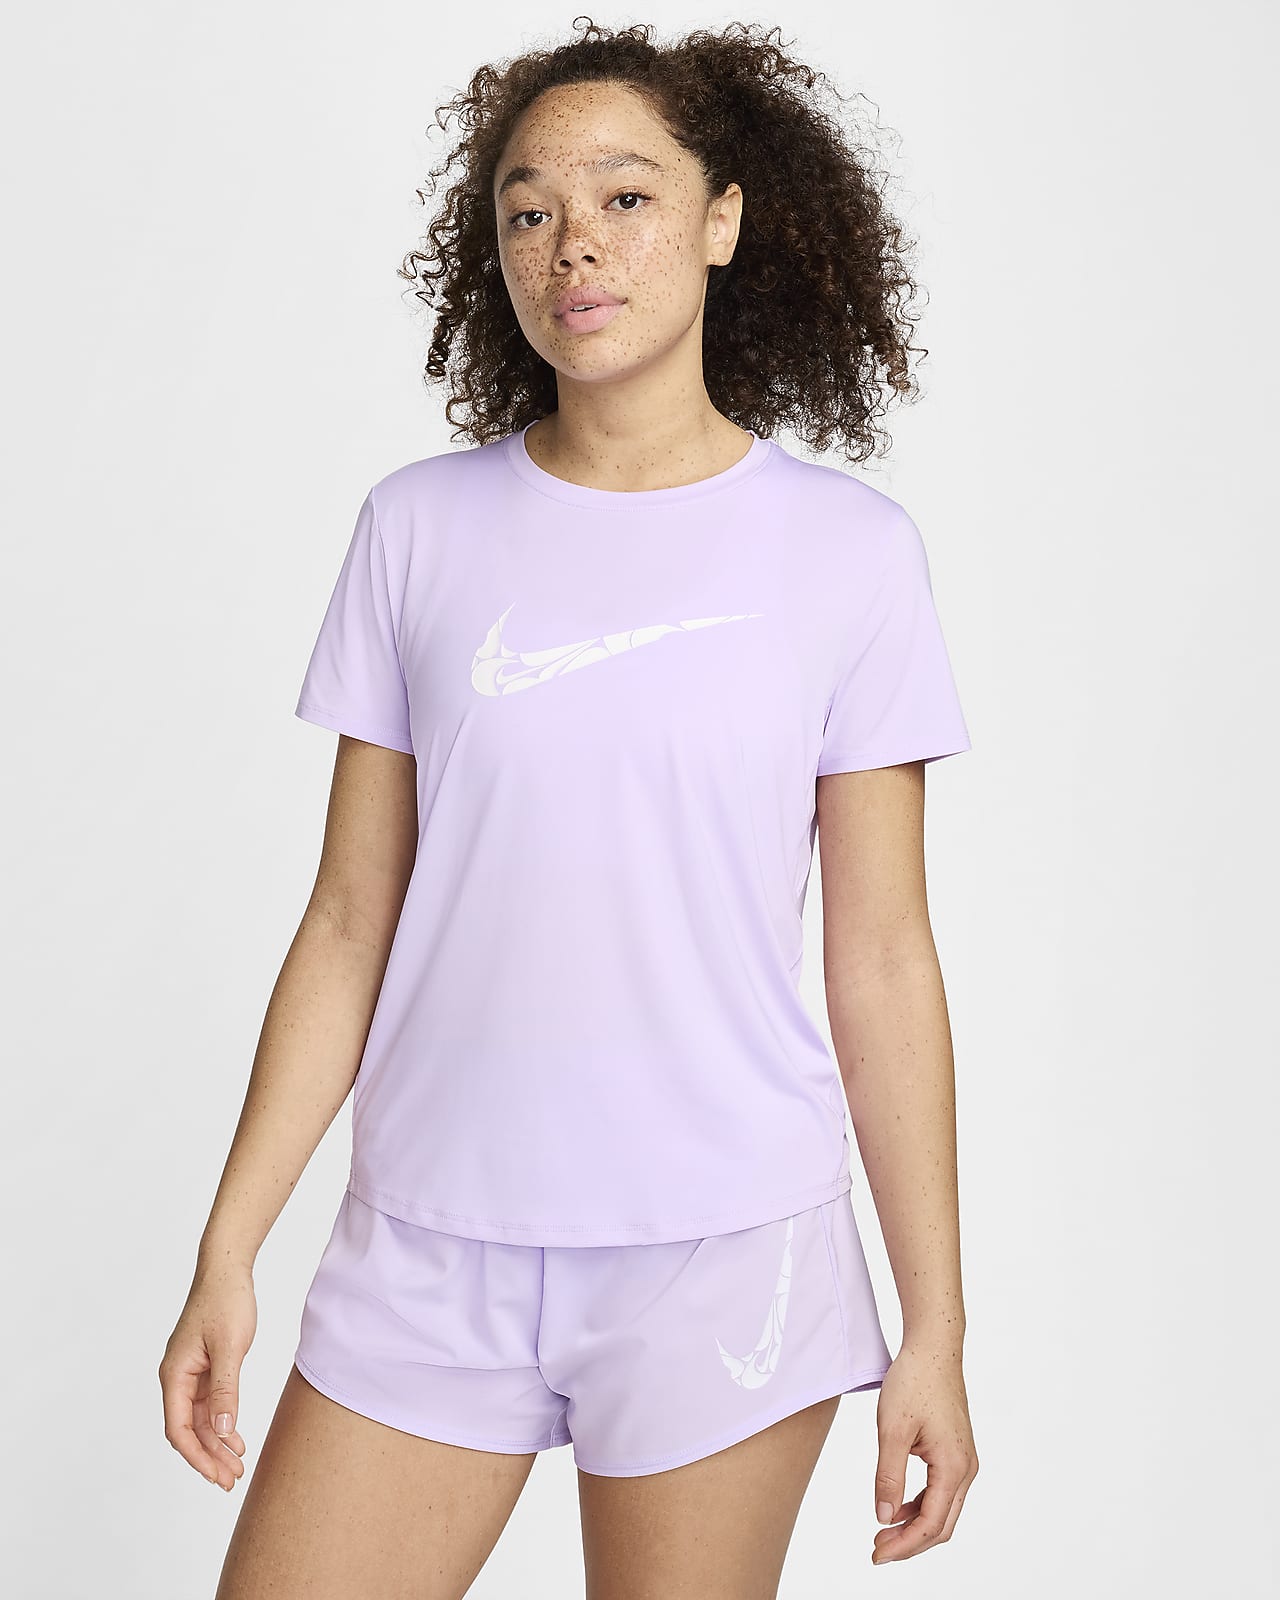 Haut de running à manches courtes Dri-FIT Nike One Swoosh pour femme